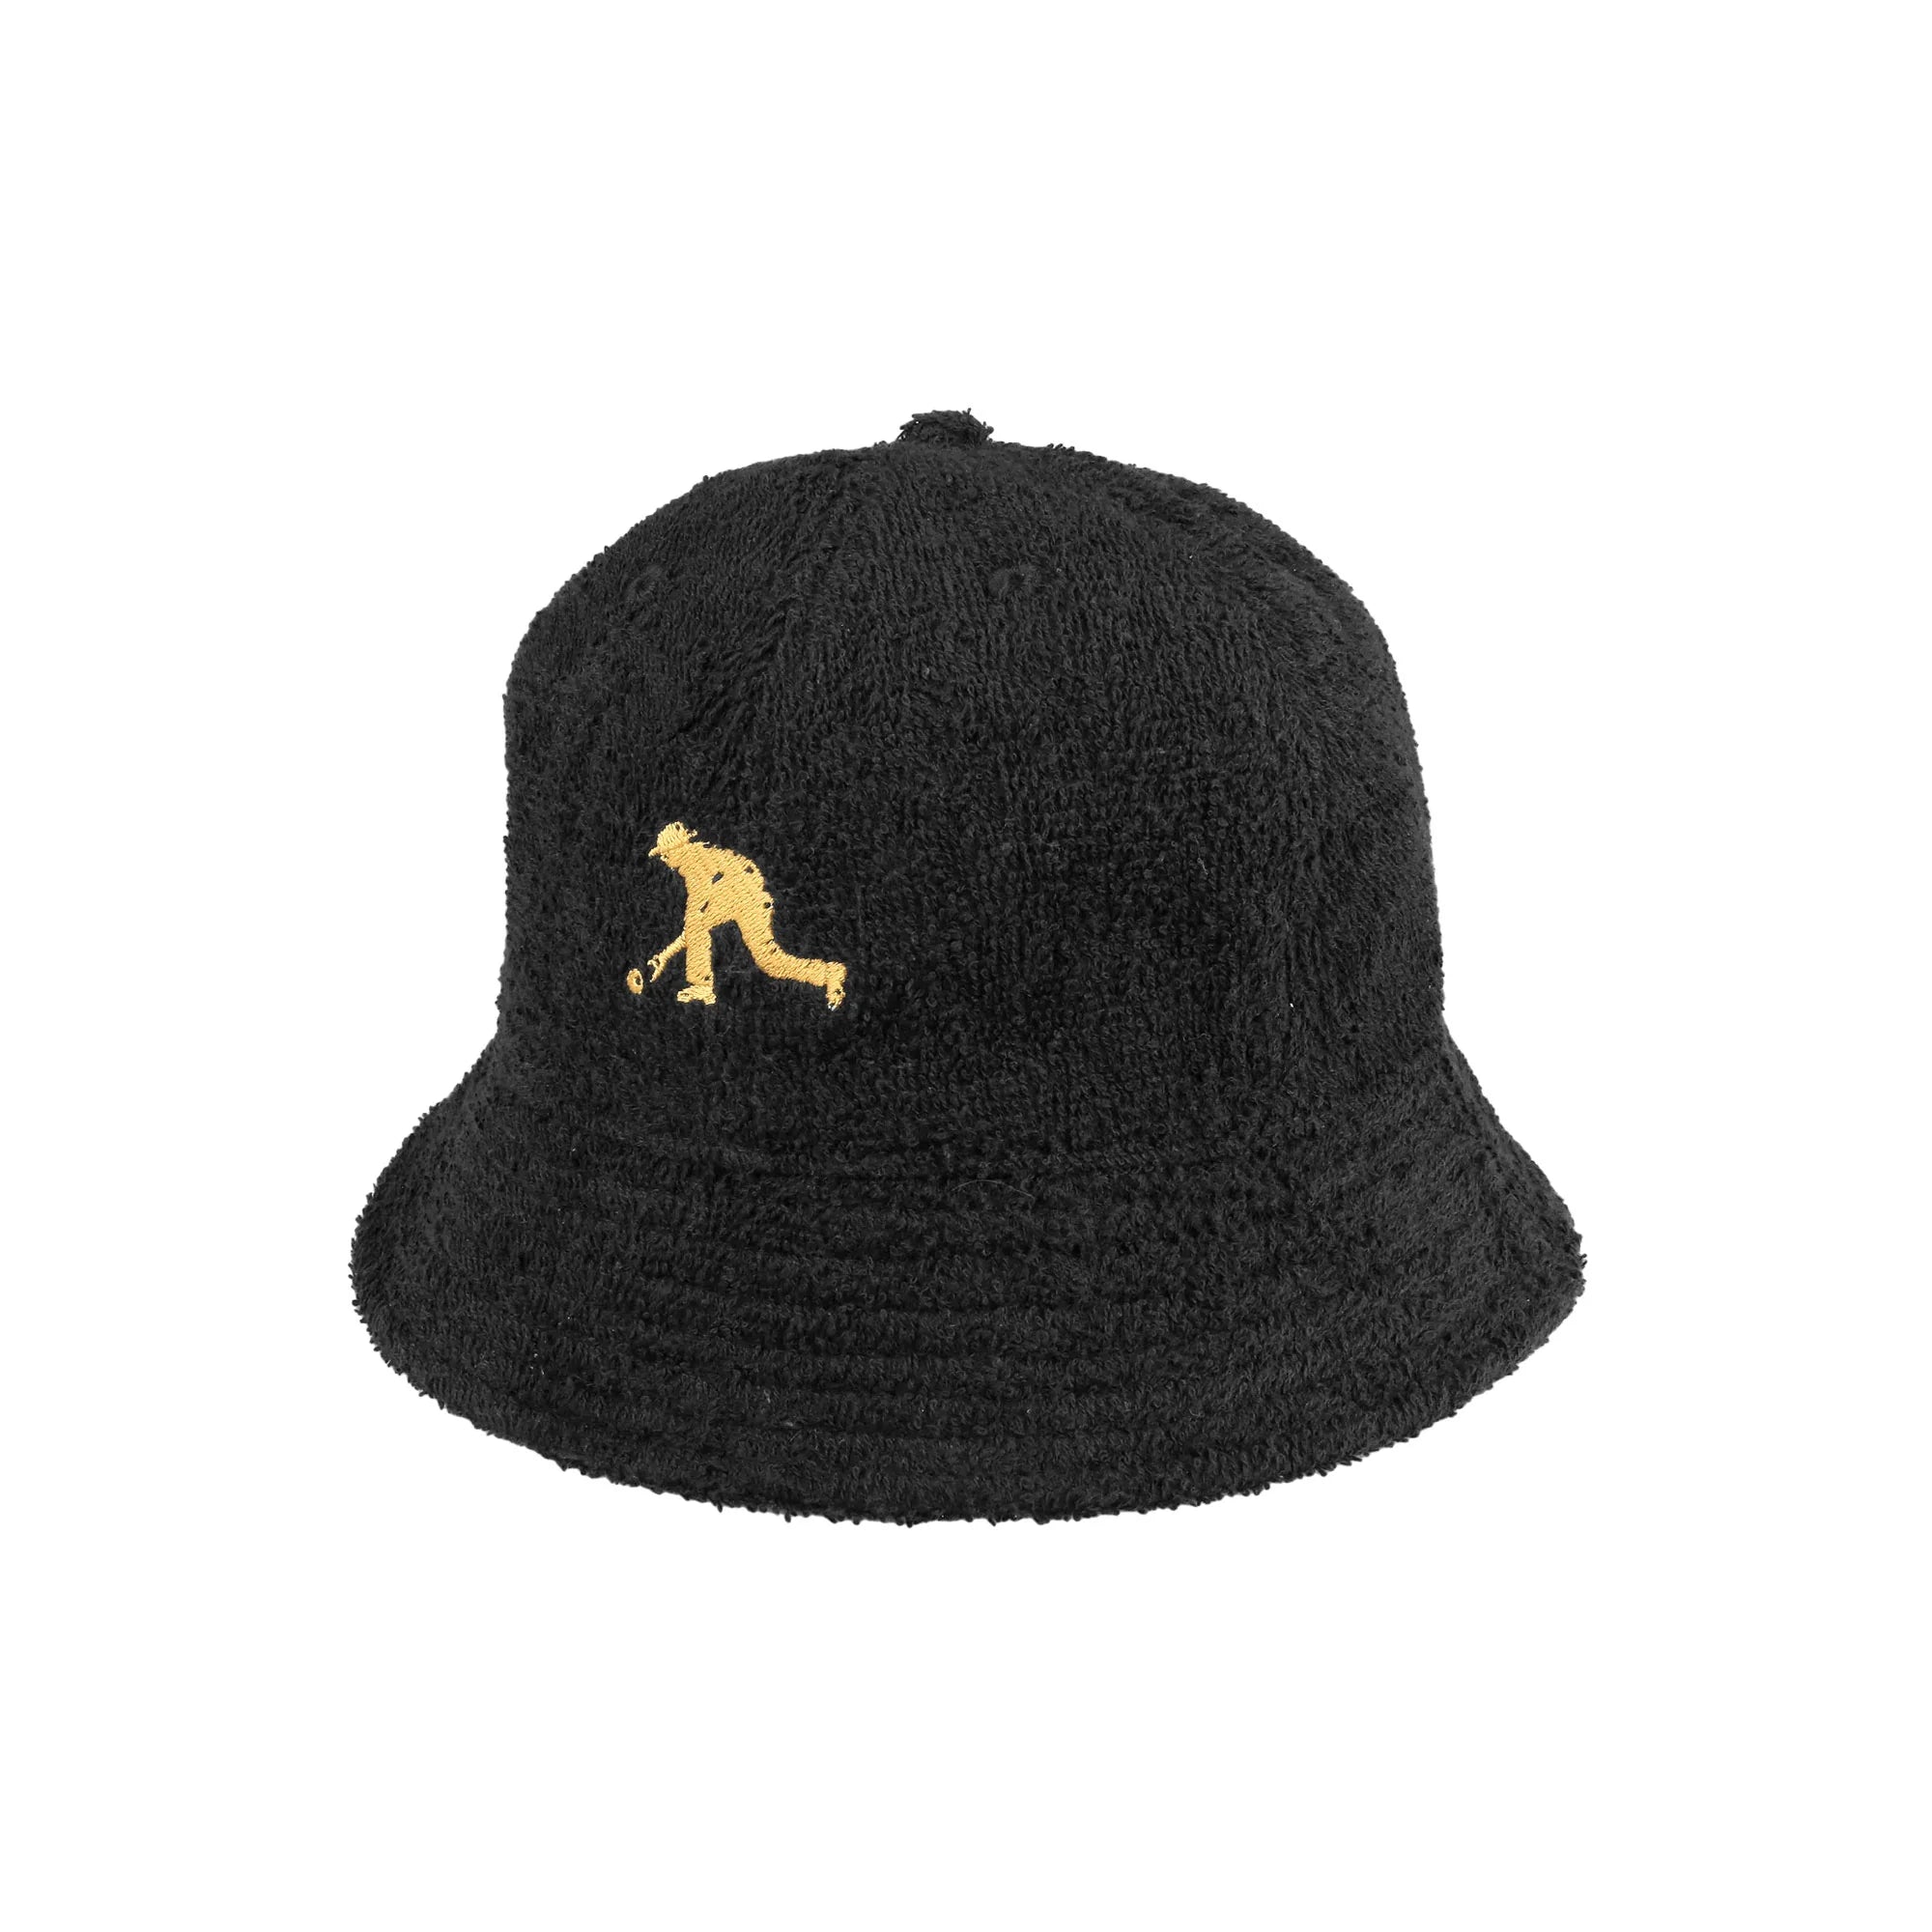 Passport Bowlo Bucket Hat in Black - Goodnews Skateshop